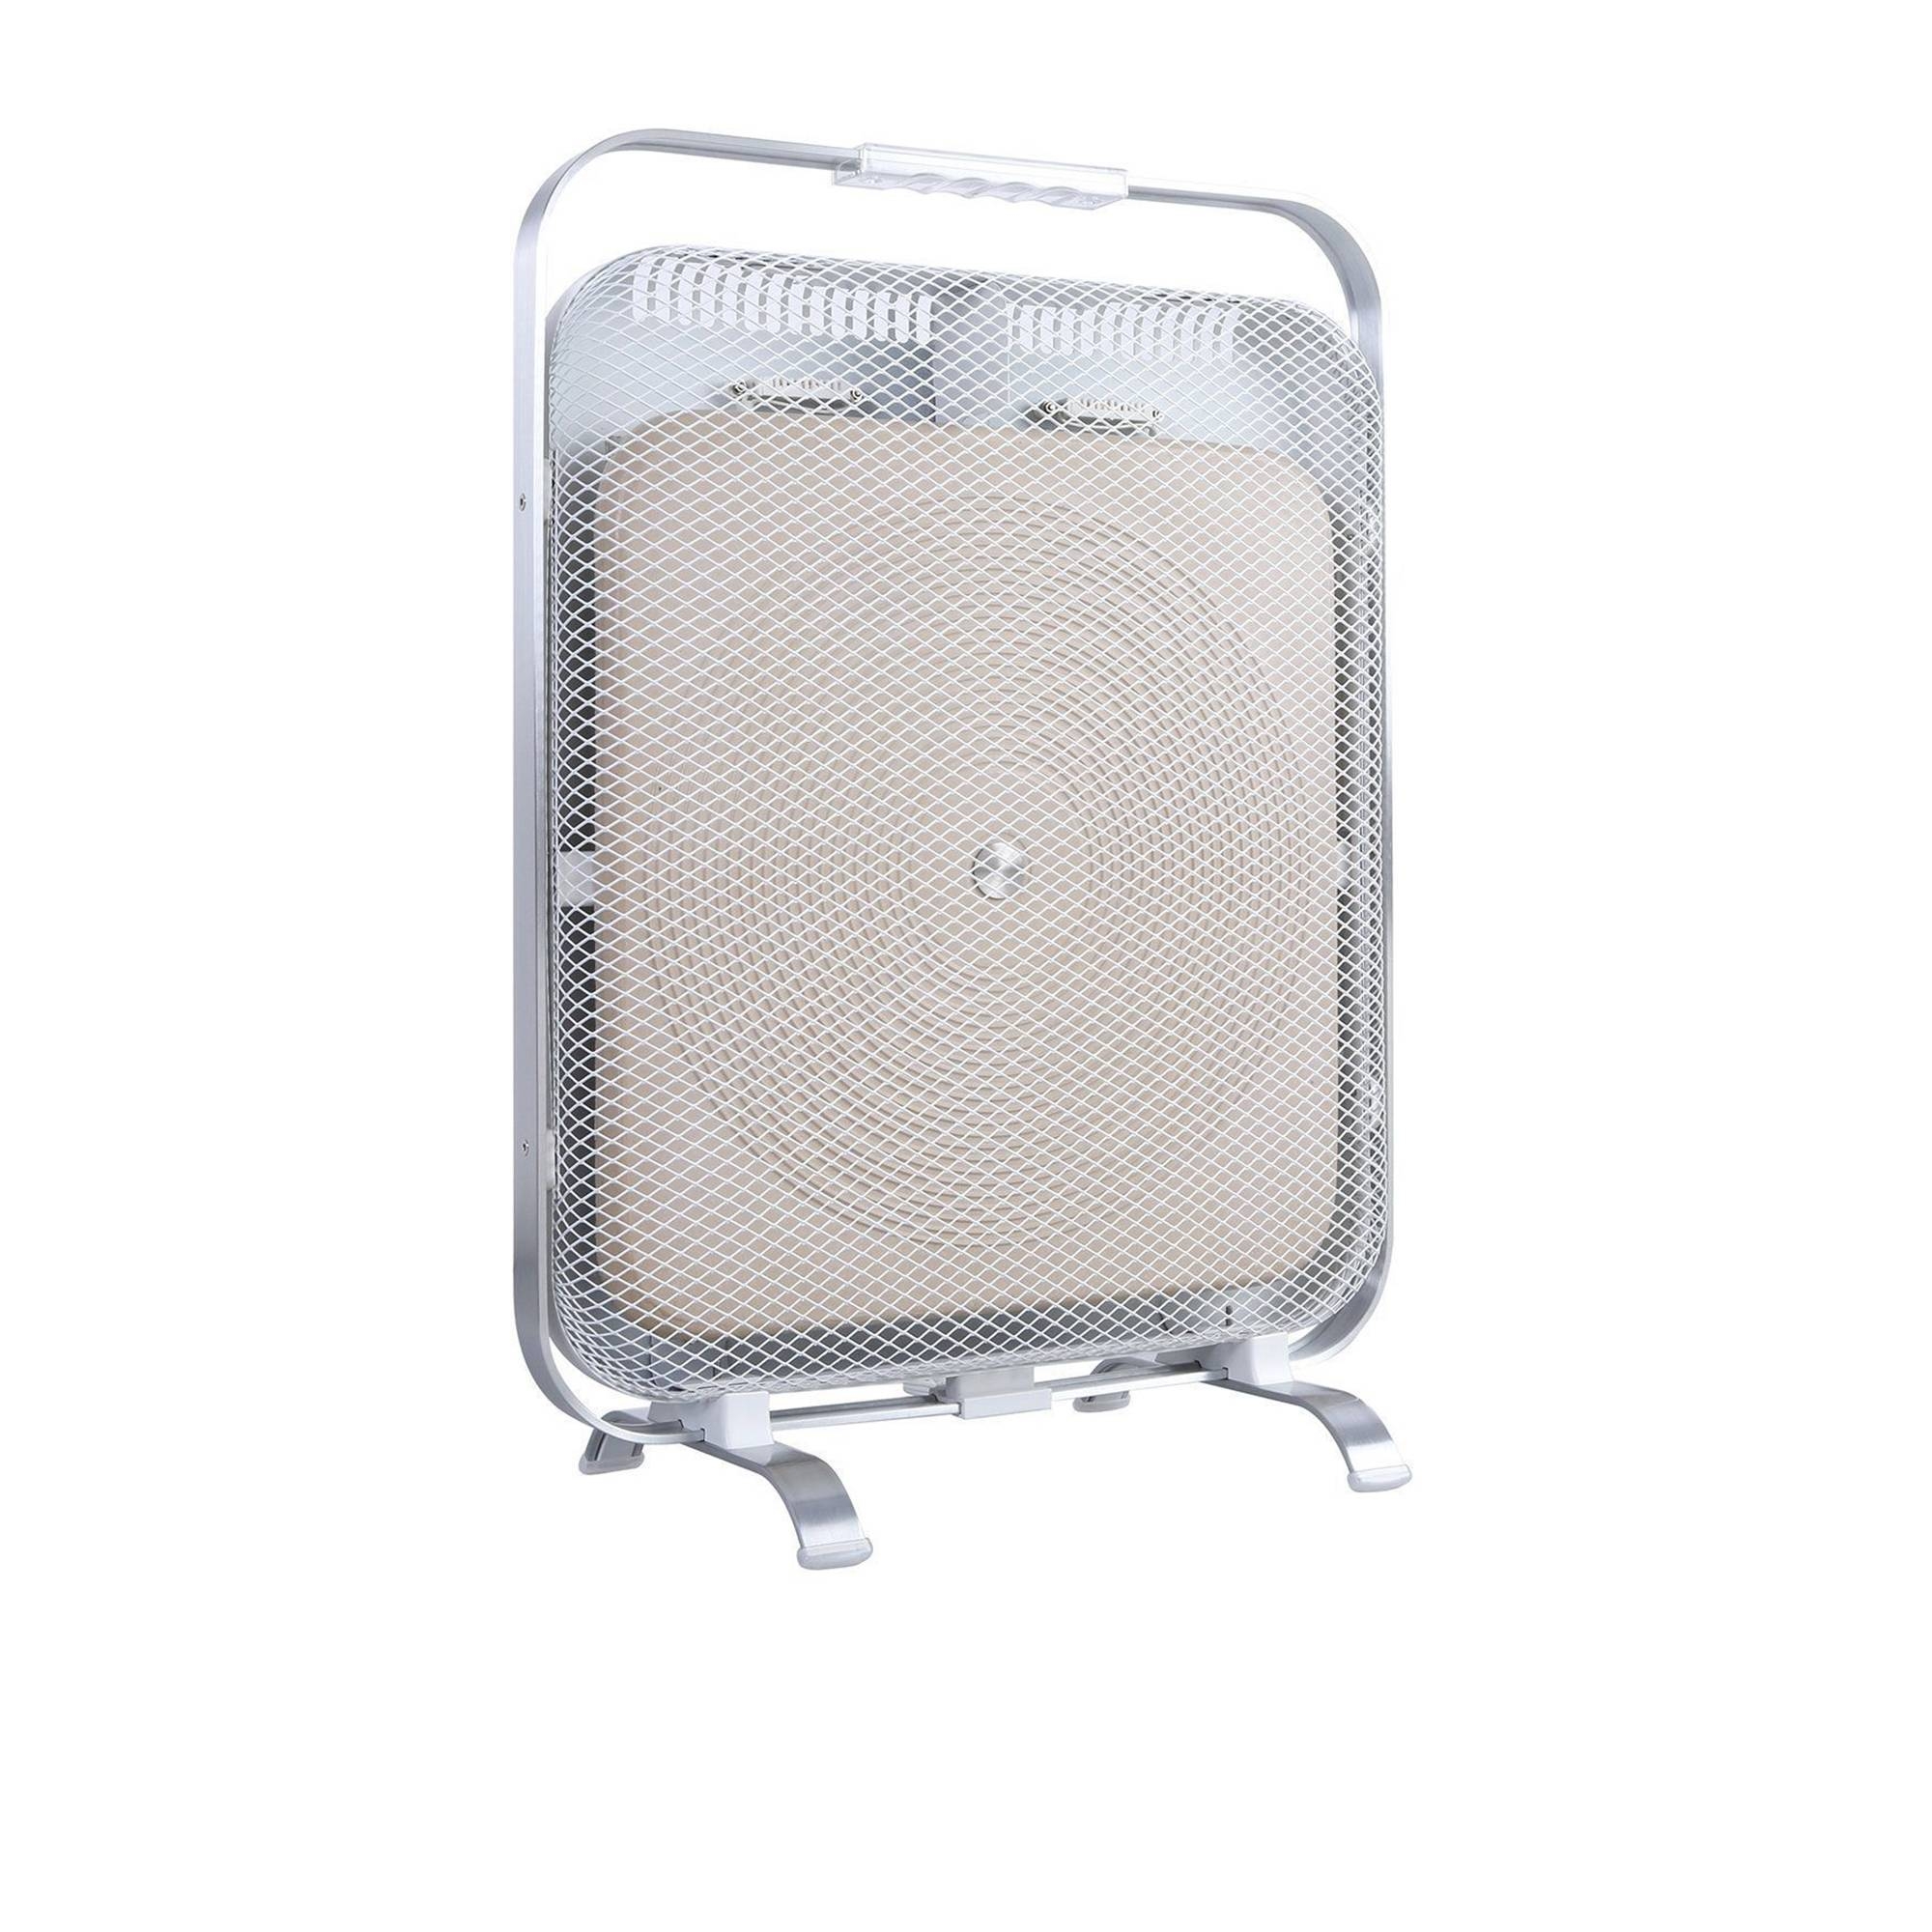 BioSari Marble Heater 1500W White Image 1